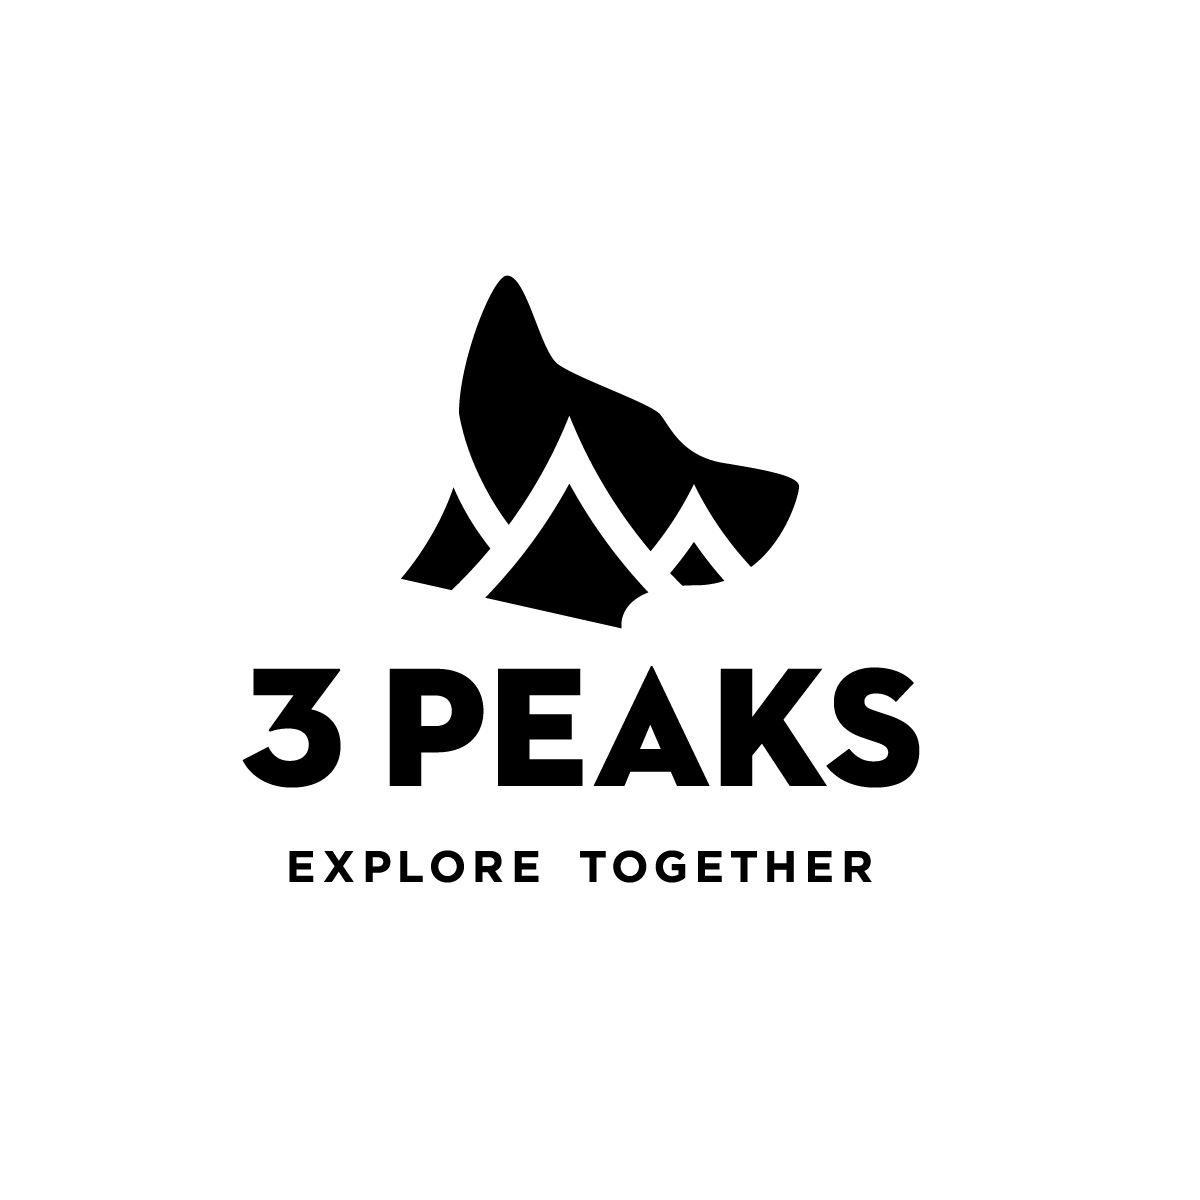 3 peaks logo